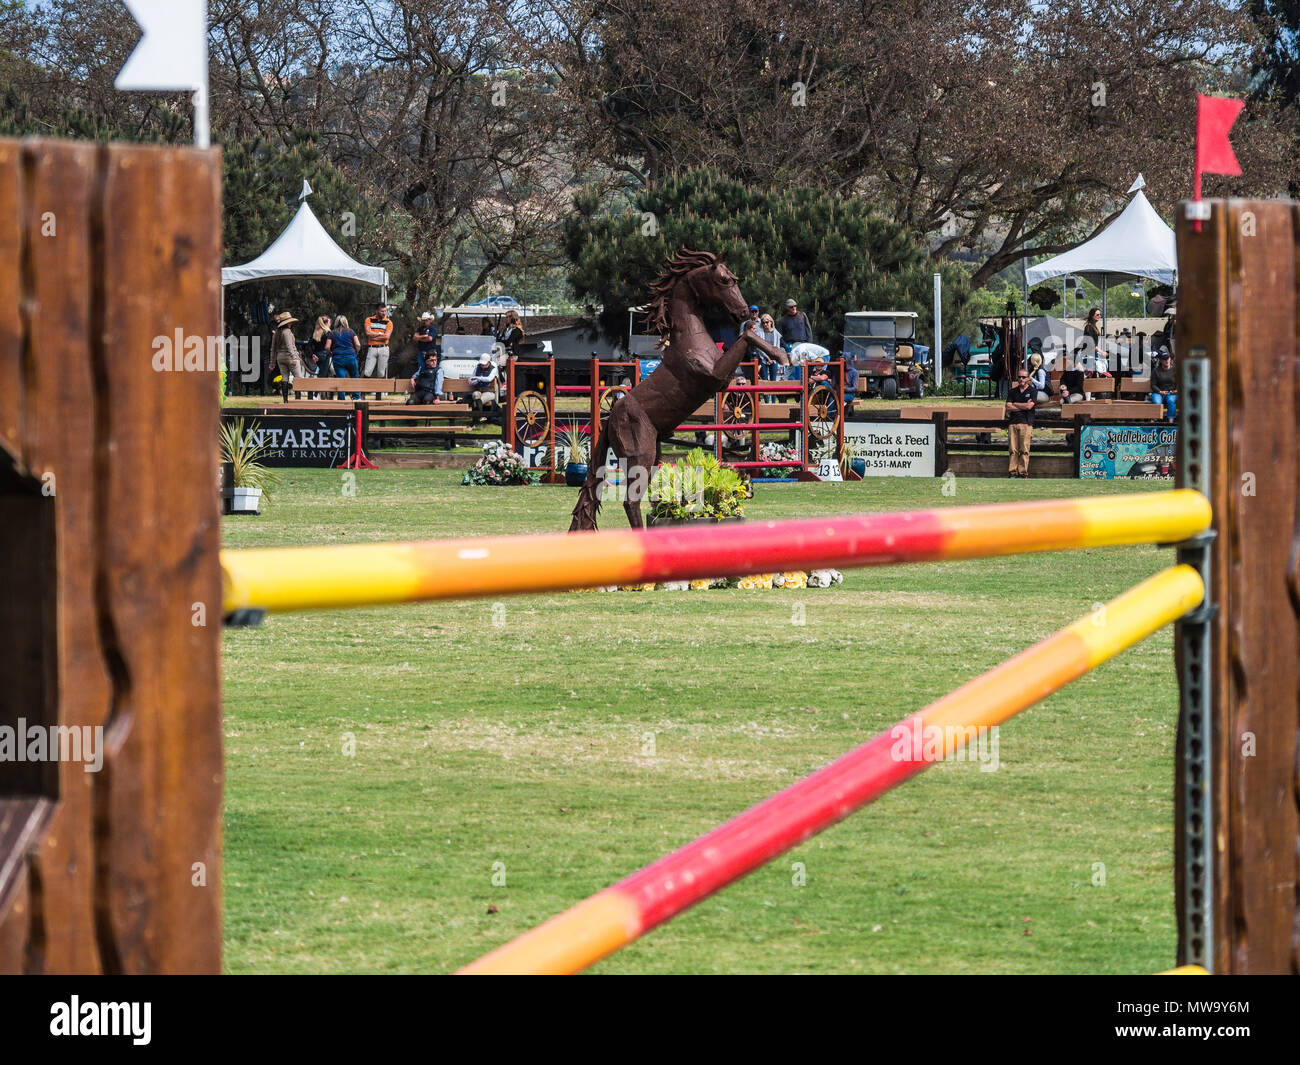 Blenheim Equisports Showpark Ranch & Coast Classic equestrian show jumping event, del mar horsepark, ca us Stock Photo